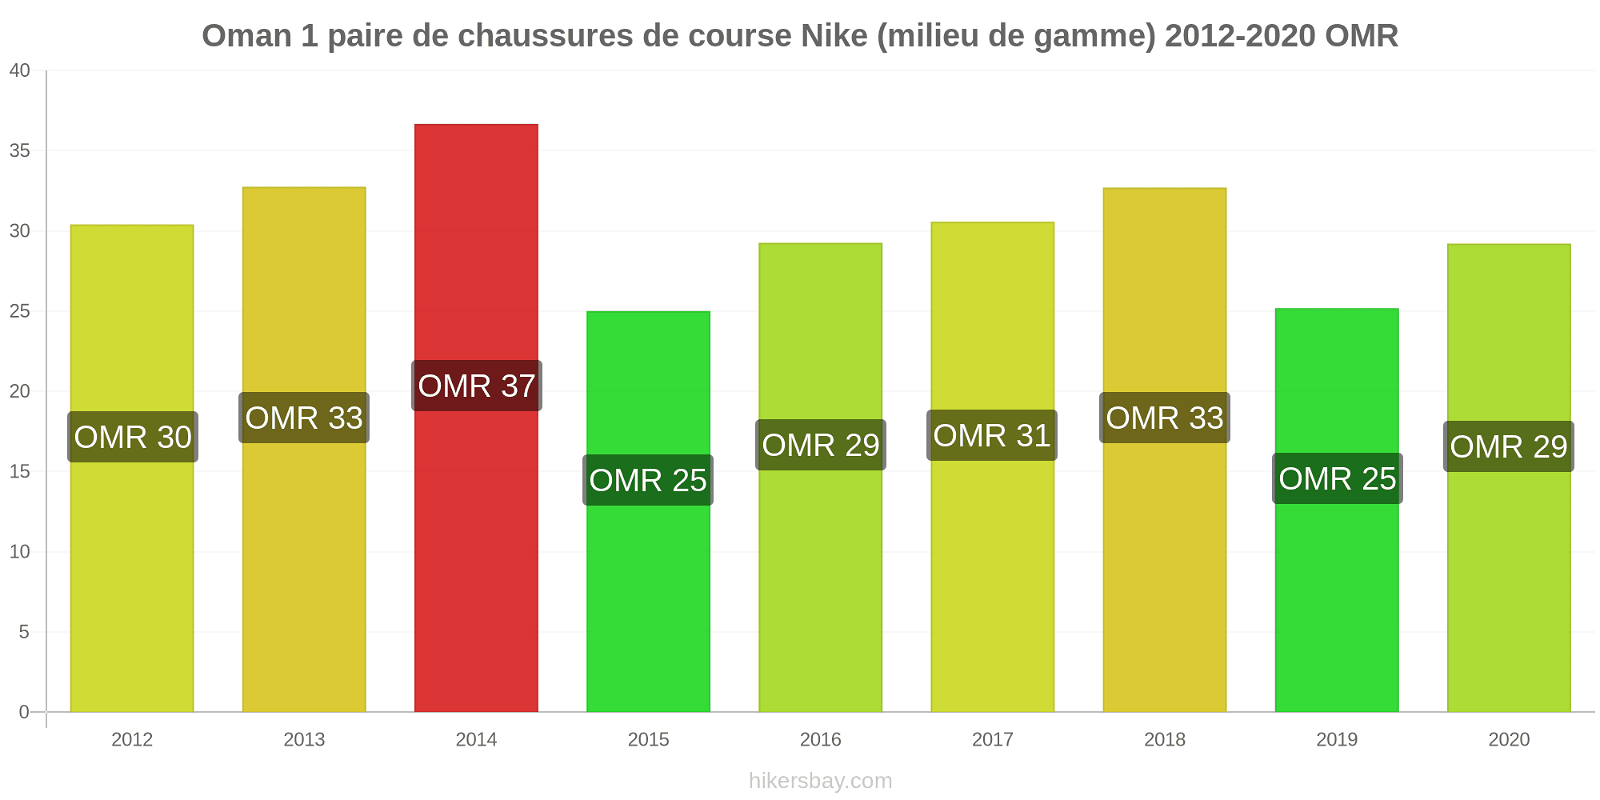 Oman changements de prix 1 paire de chaussures de course Nike (milieu de gamme) hikersbay.com